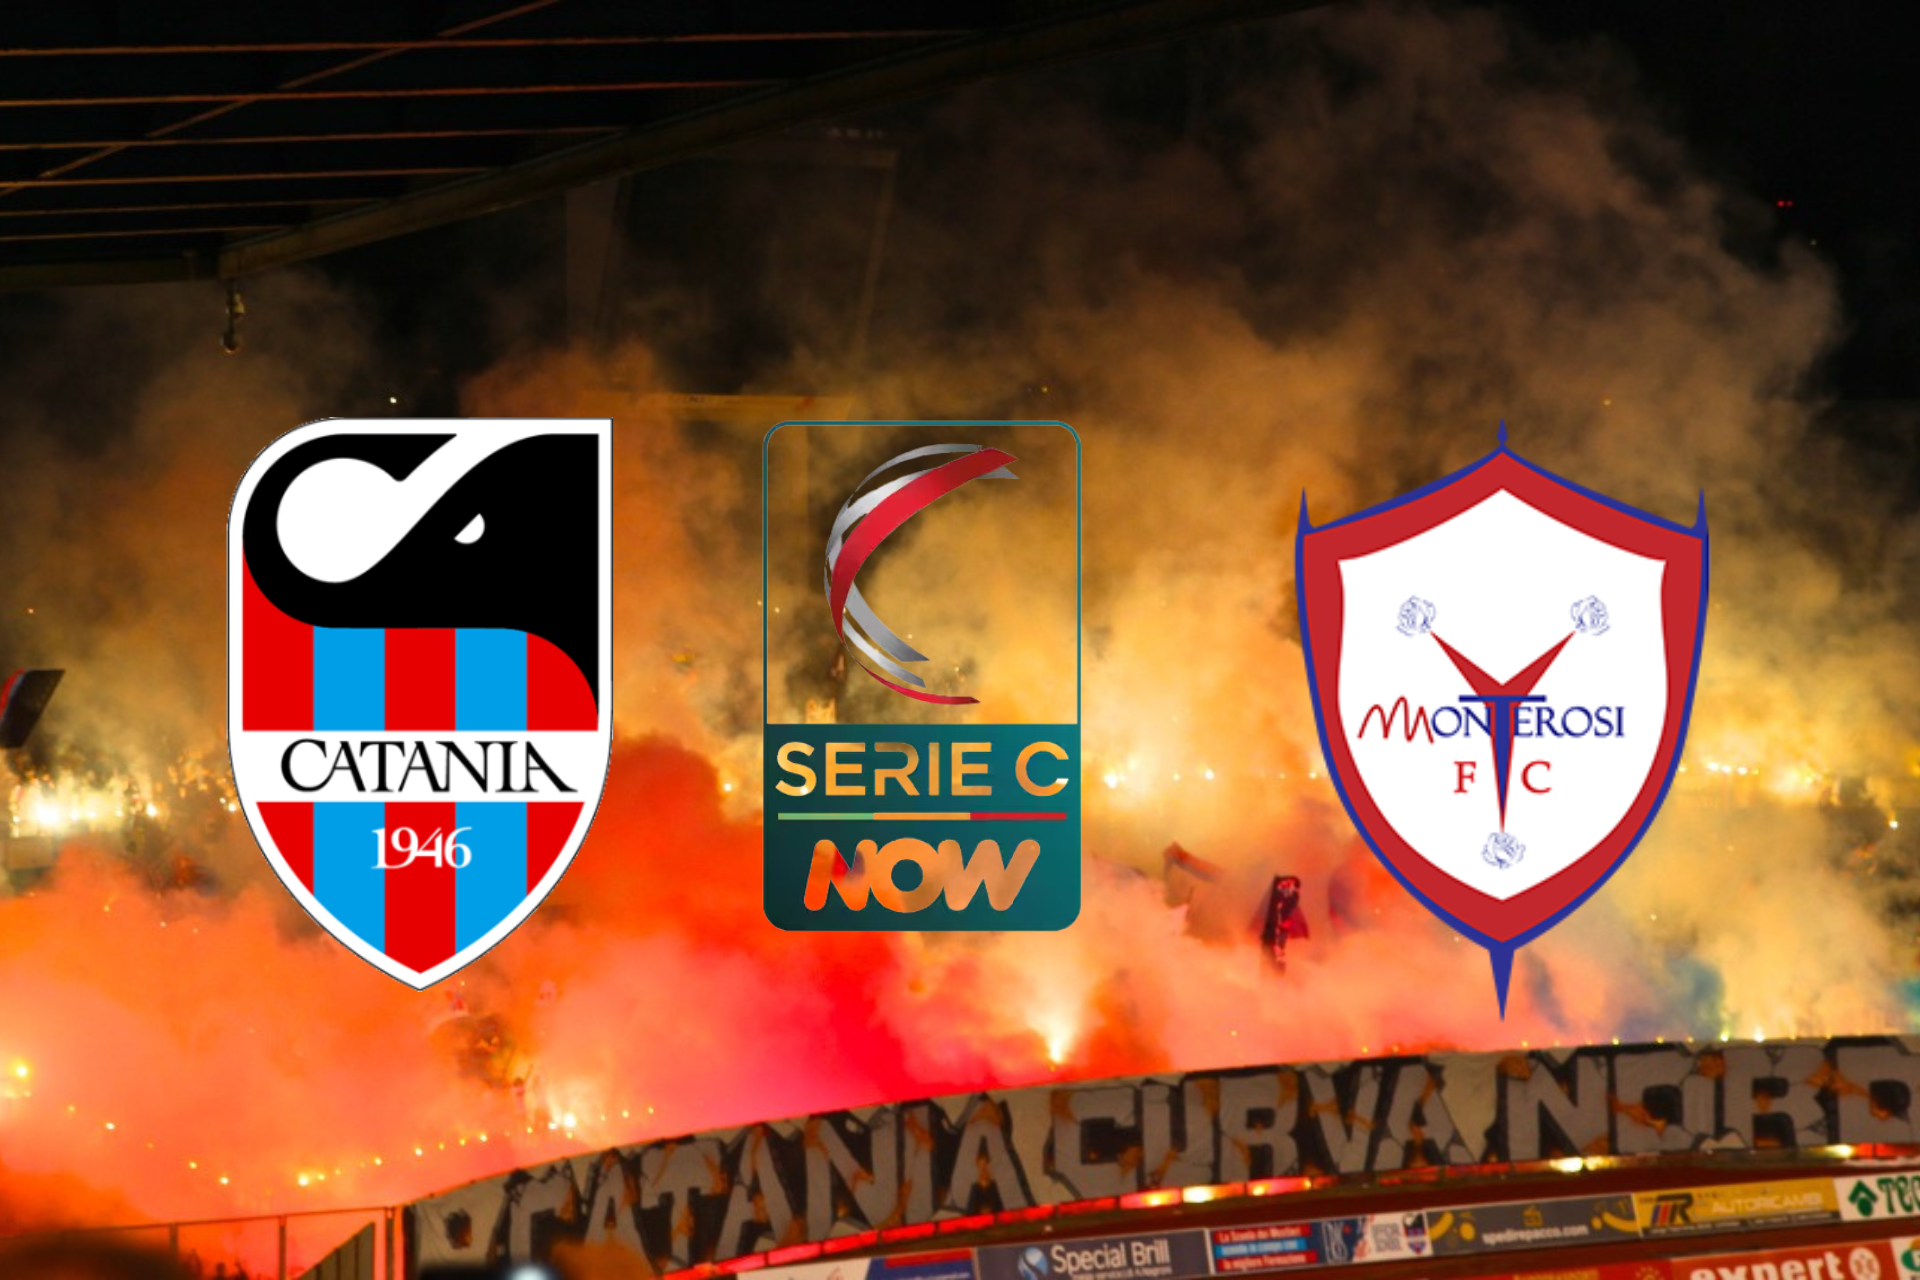 Catania – Monterosi 1-1, match che finisce in parità: cercasi continuità